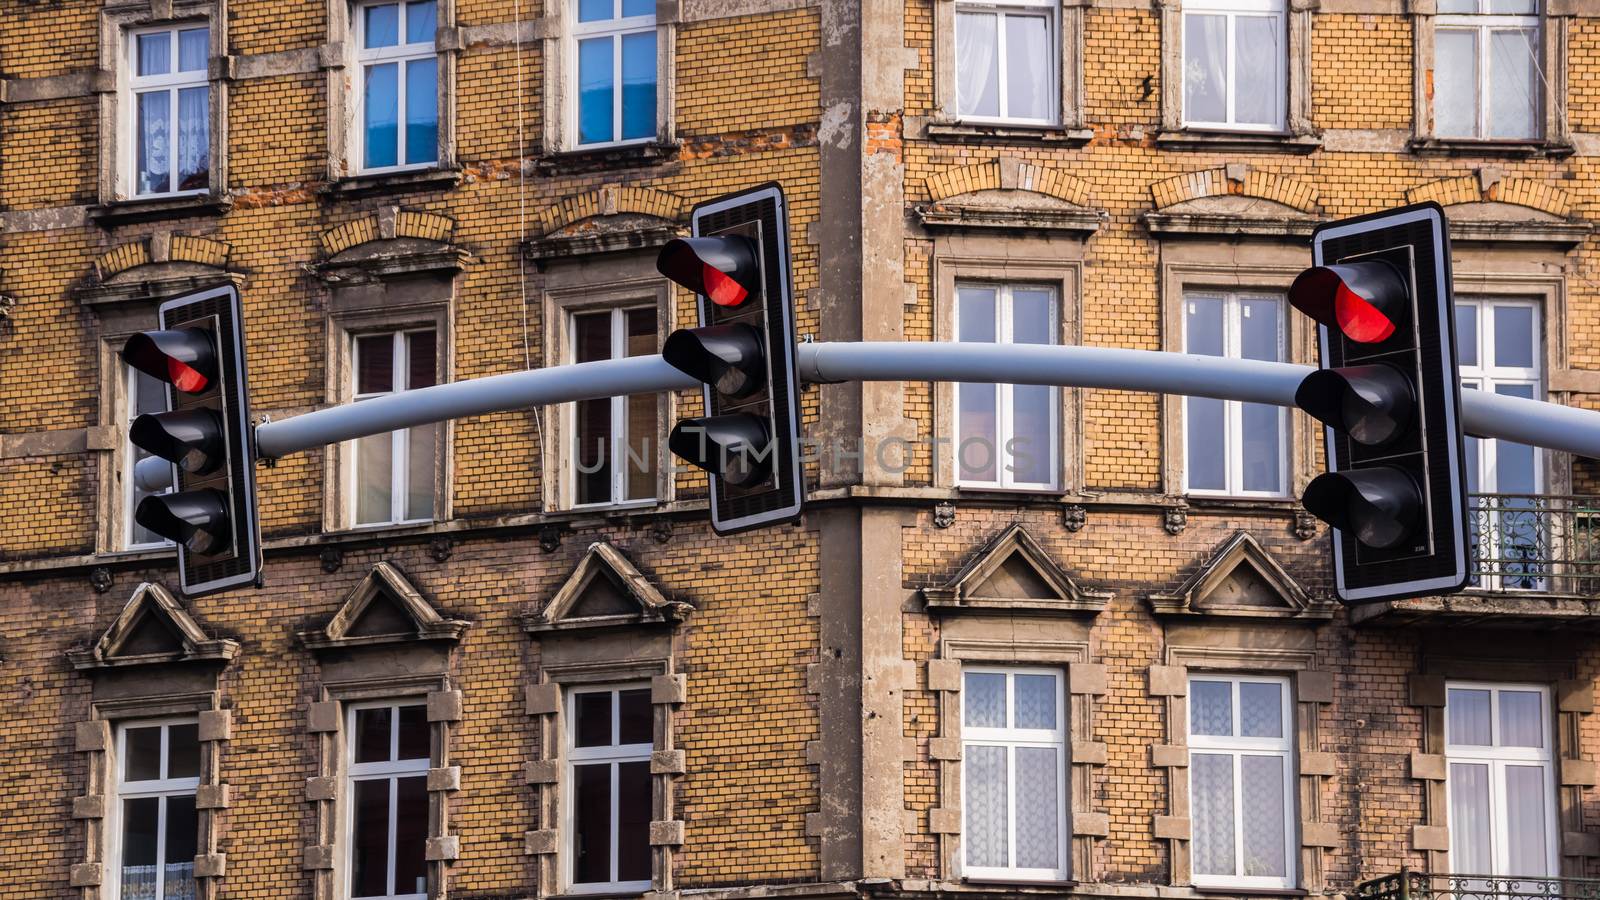 Traffic lights by pawel_szczepanski